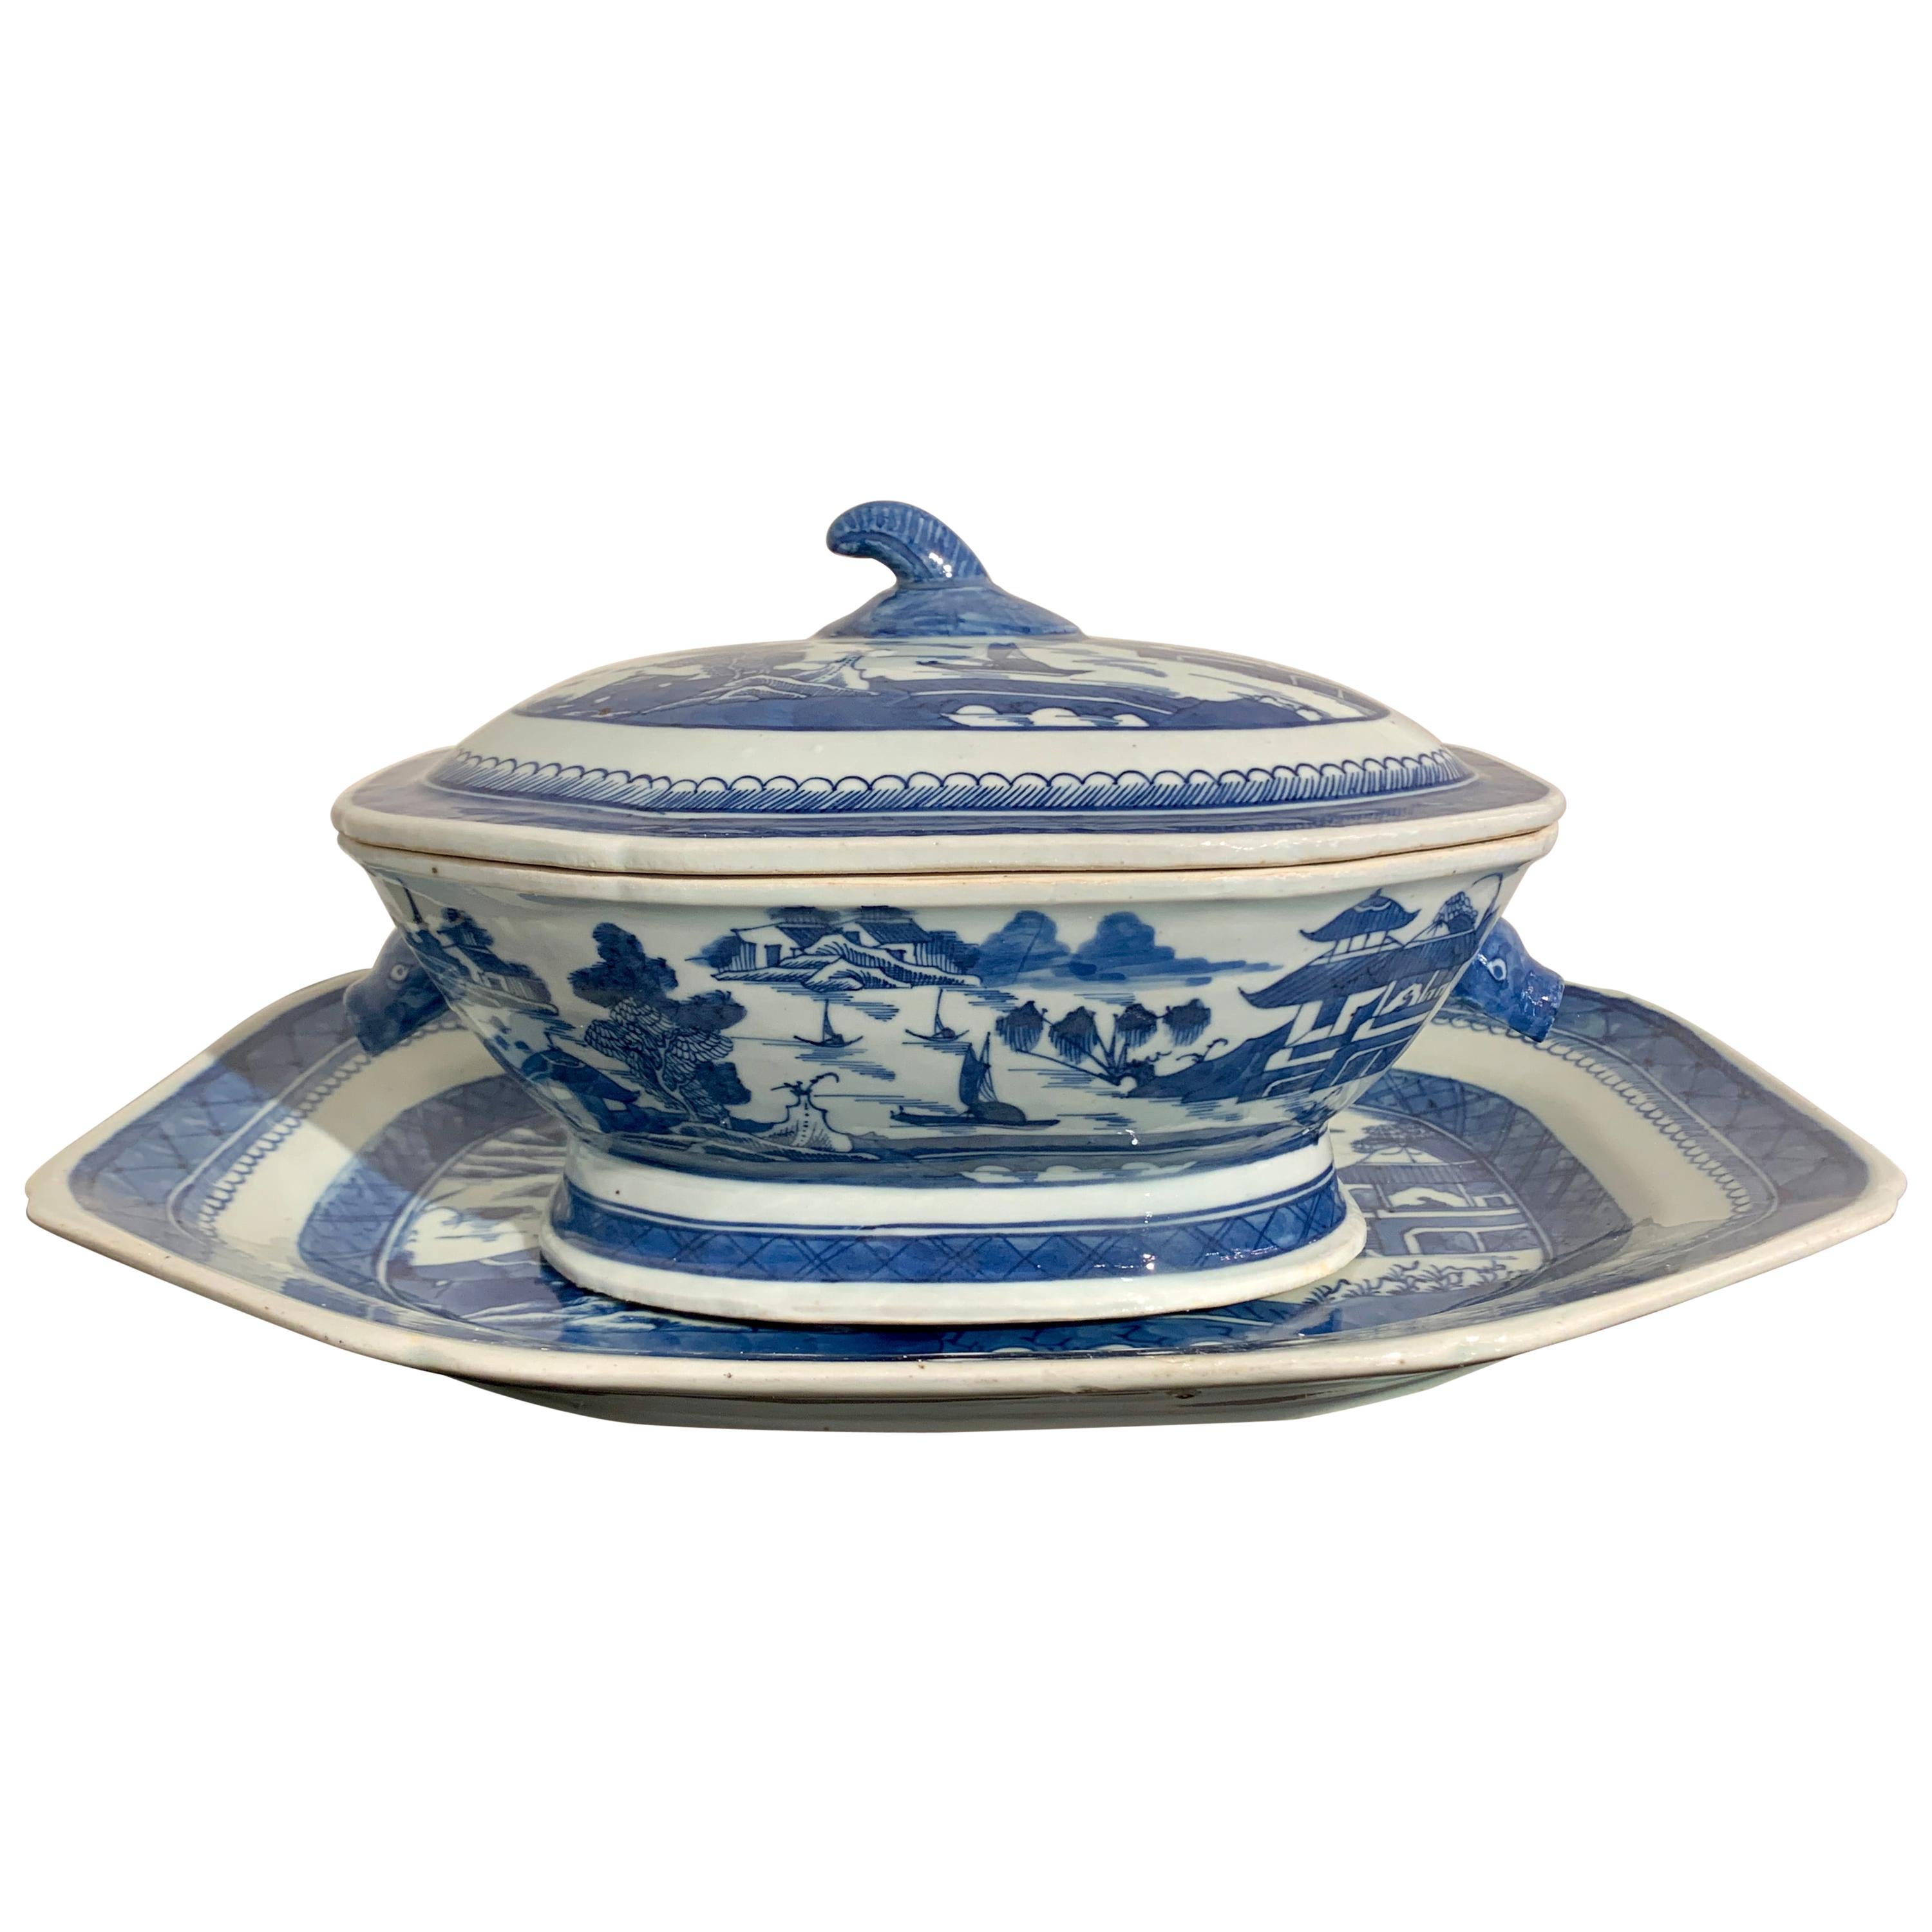 Soupière et plateau couverts en porcelaine bleue et blanche d'exportation chinoise, 19e siècle